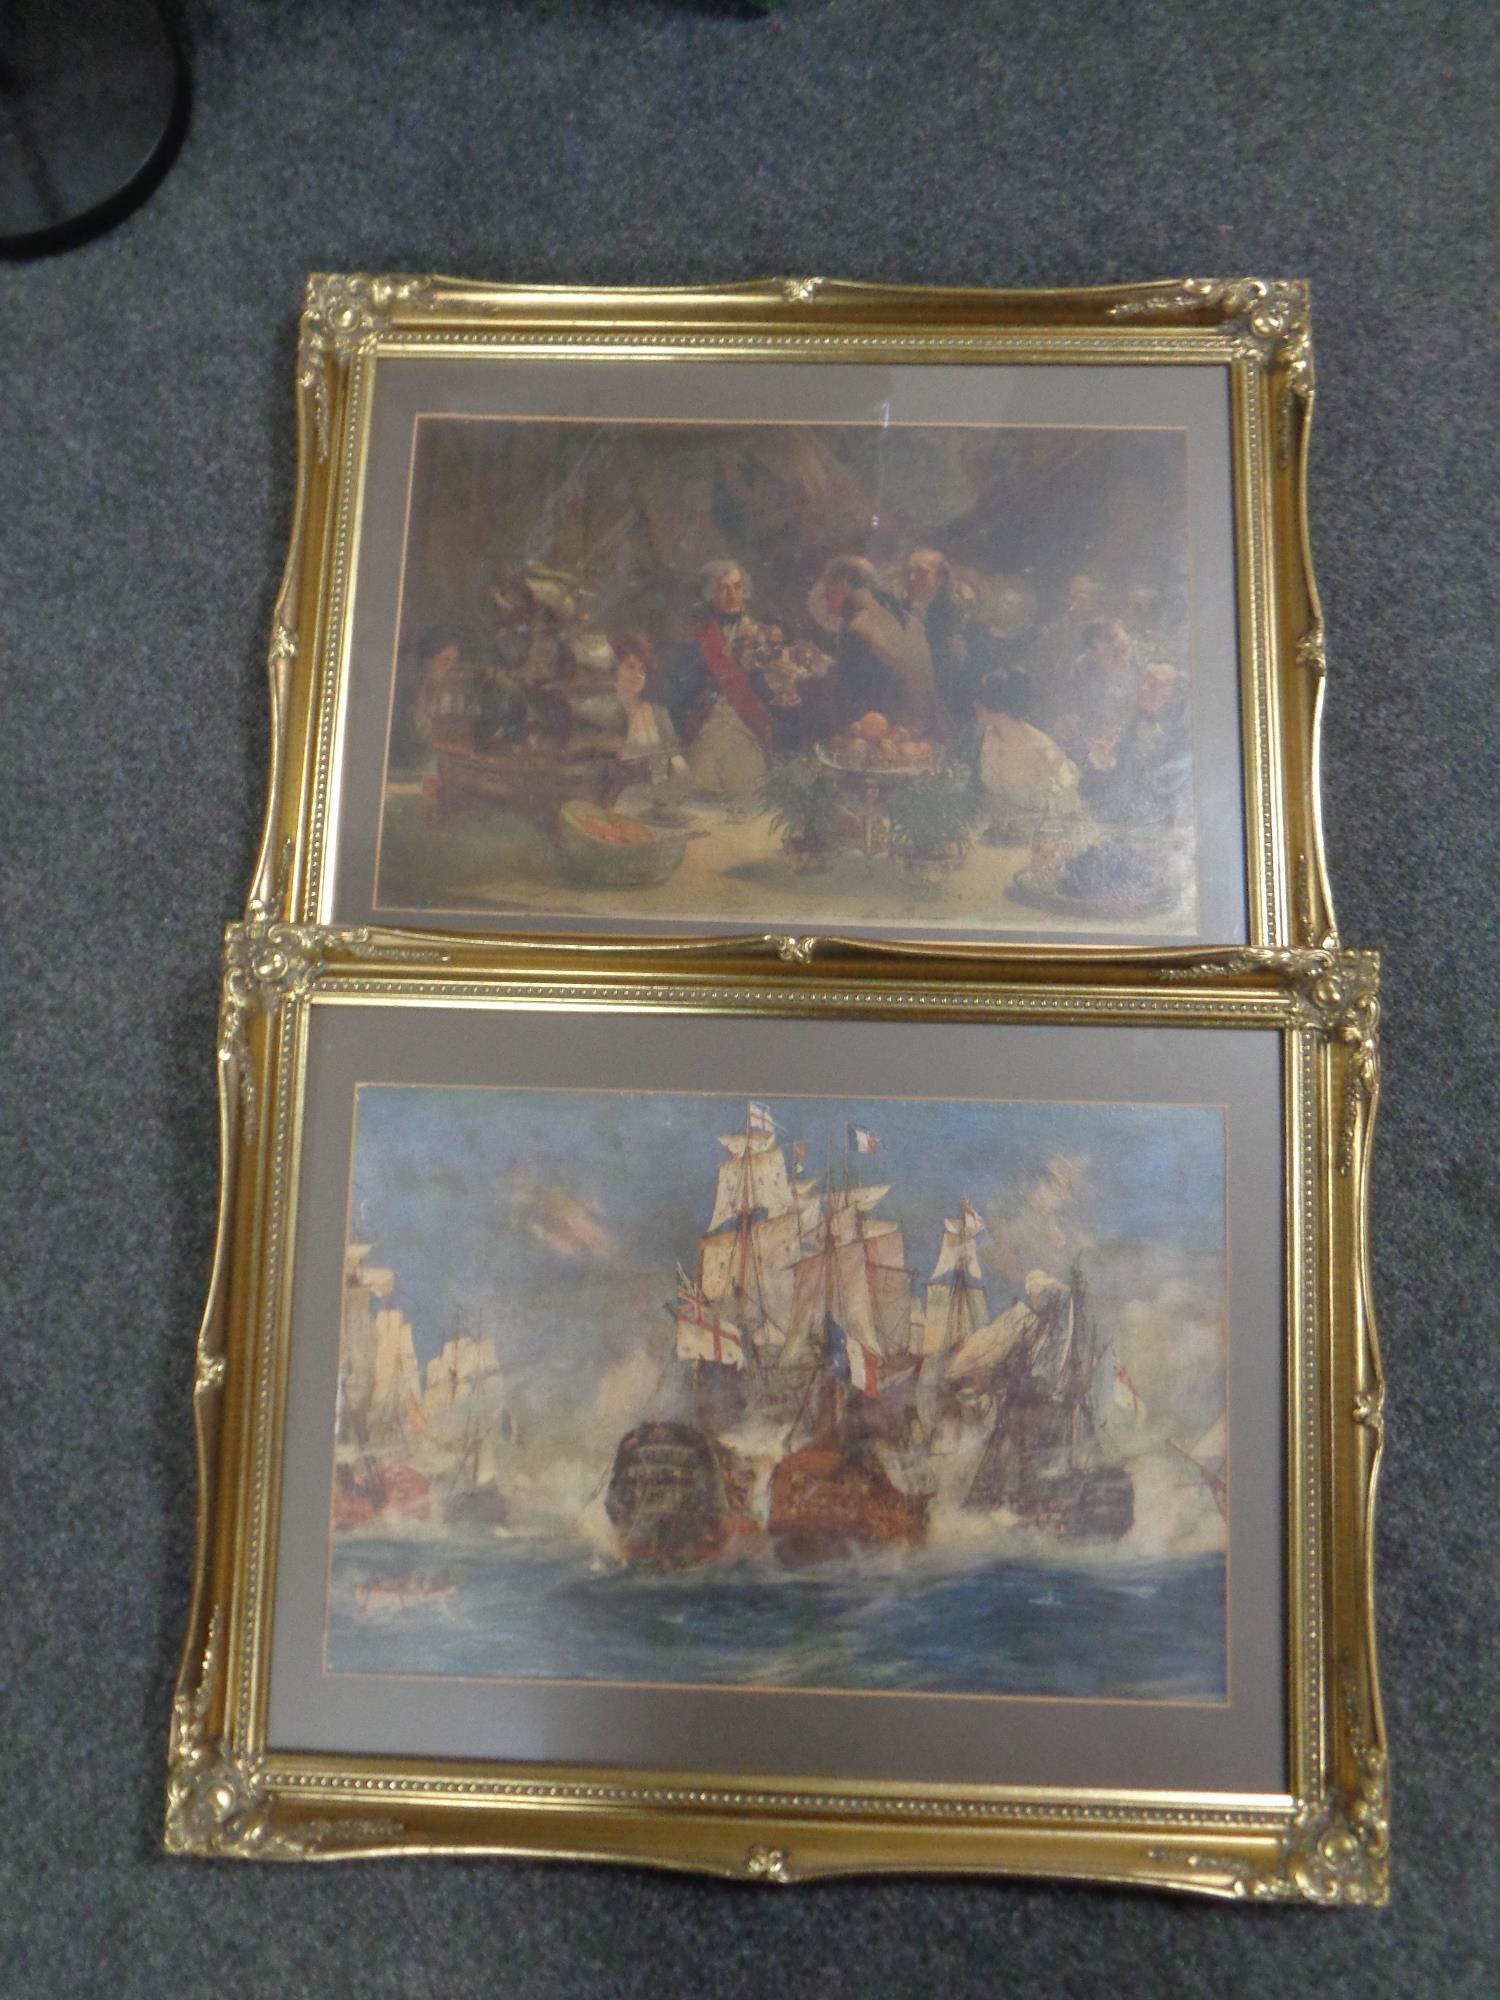 A print, Battle of Trafalgar, in a gilt frame,